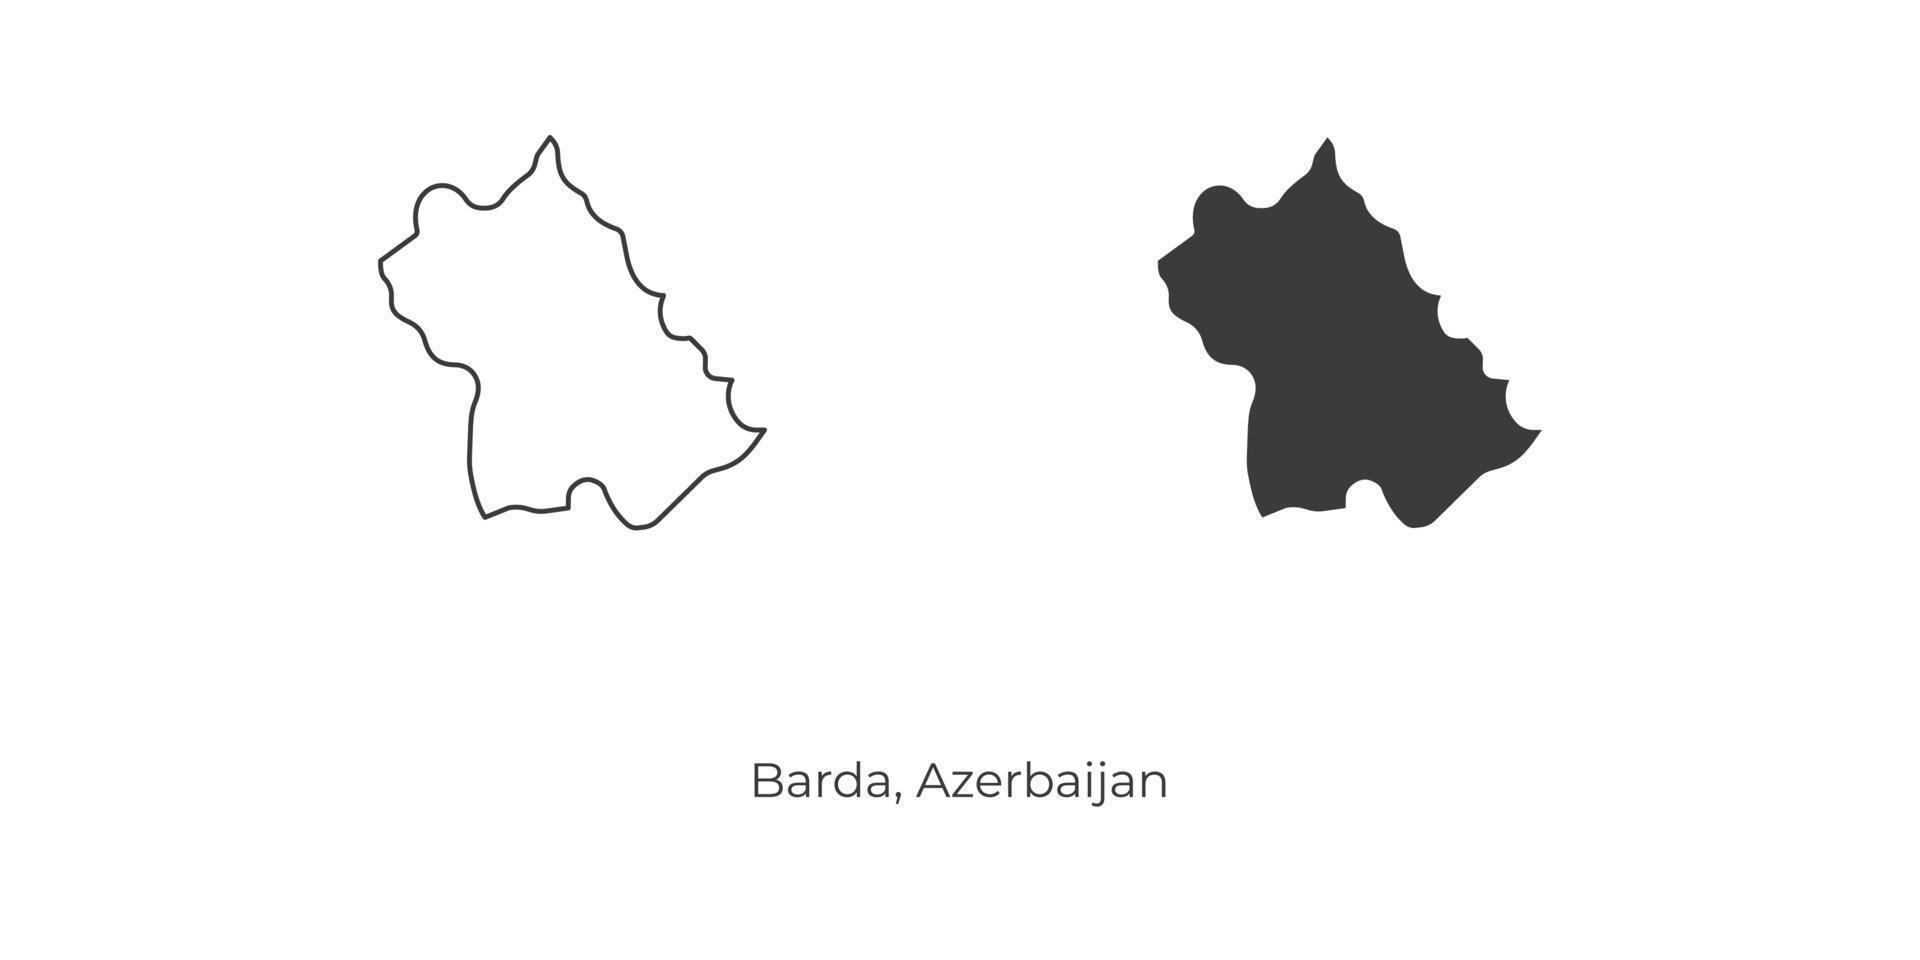 ilustração em vetor simples do mapa de barda, azerbaijão.